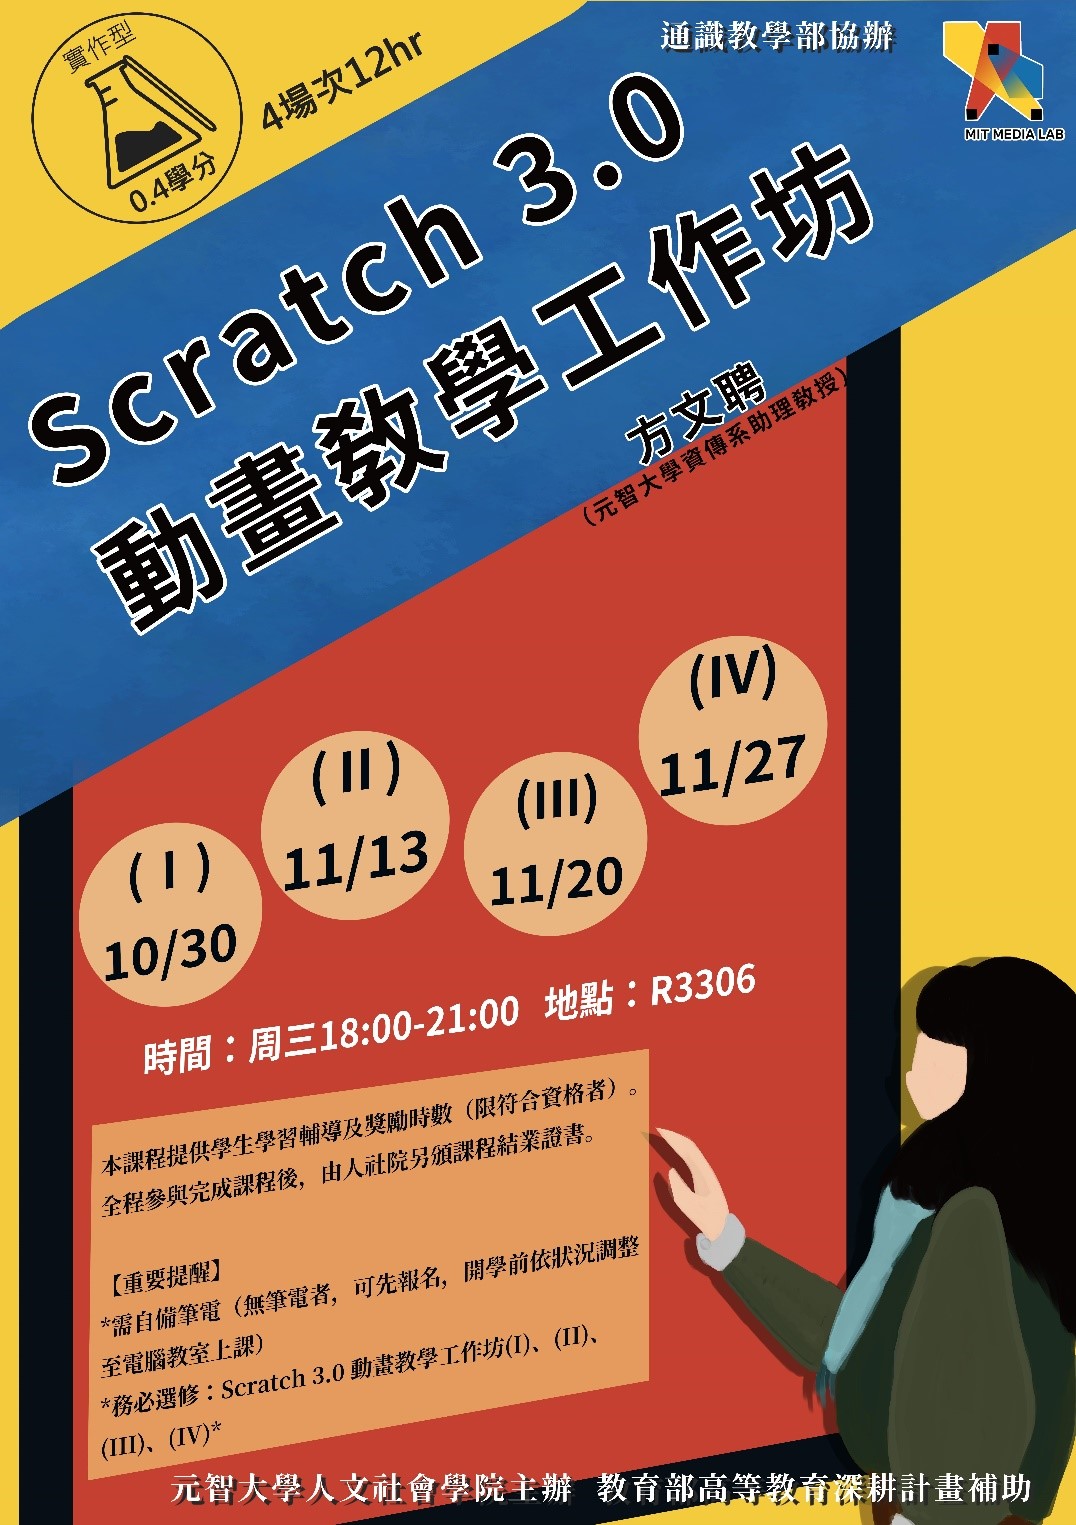 歡迎報名：人社院 與 通識部 合辦 夜間「Scratch 3.0 動畫教學工作坊」, 課程時間：10/30、11/13、11/20、11/27（三）